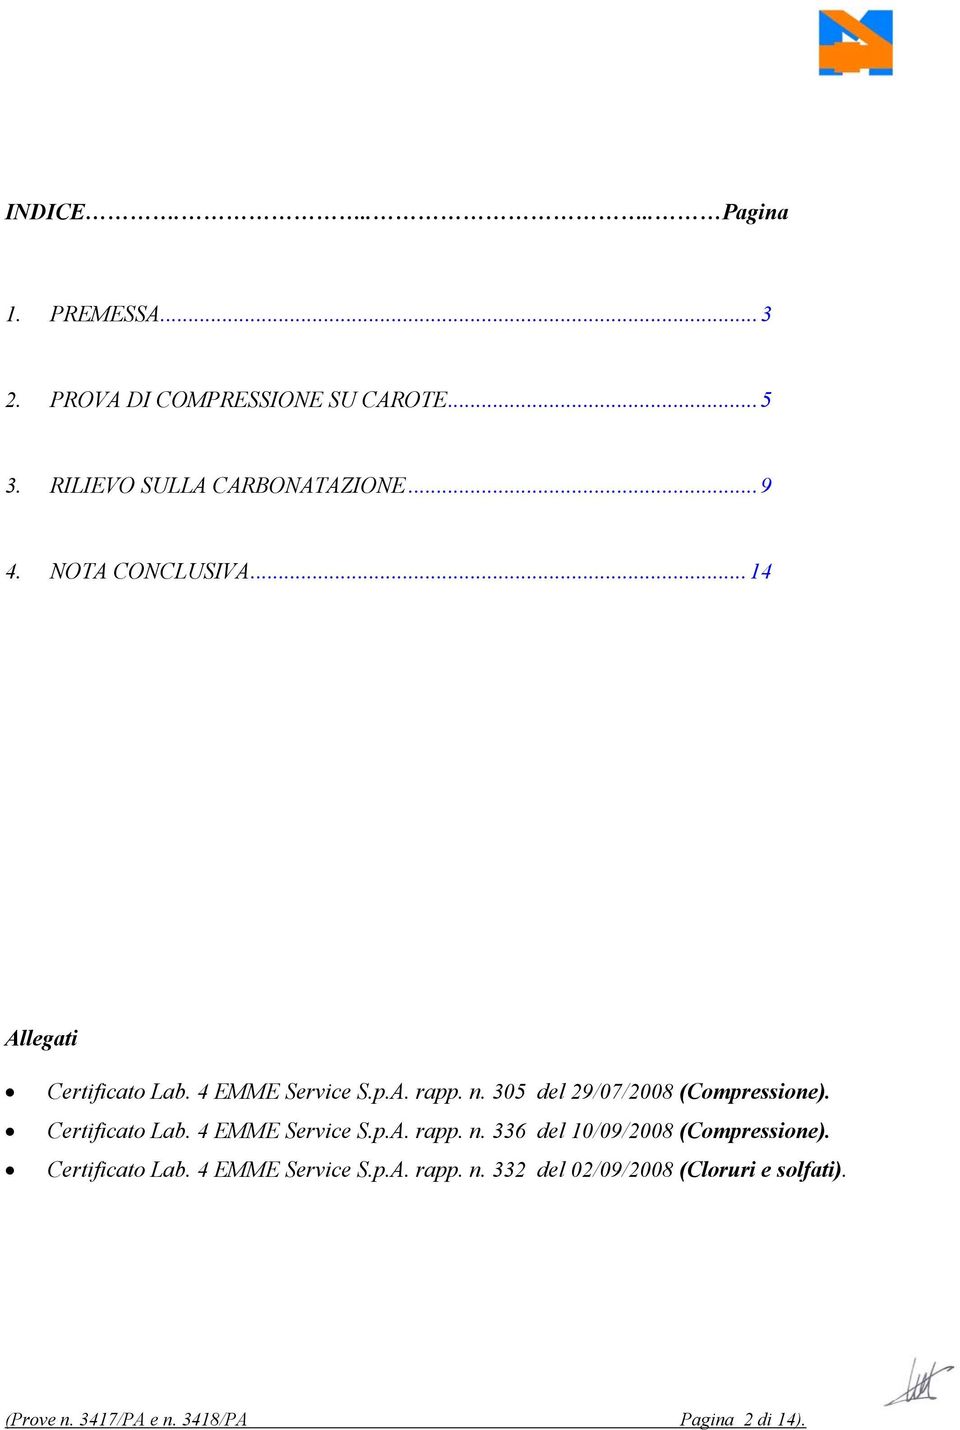 305 del 29/07/2008 (Compressione). Certificato Lab. 4 EMME Service S.p.A. rapp. n.